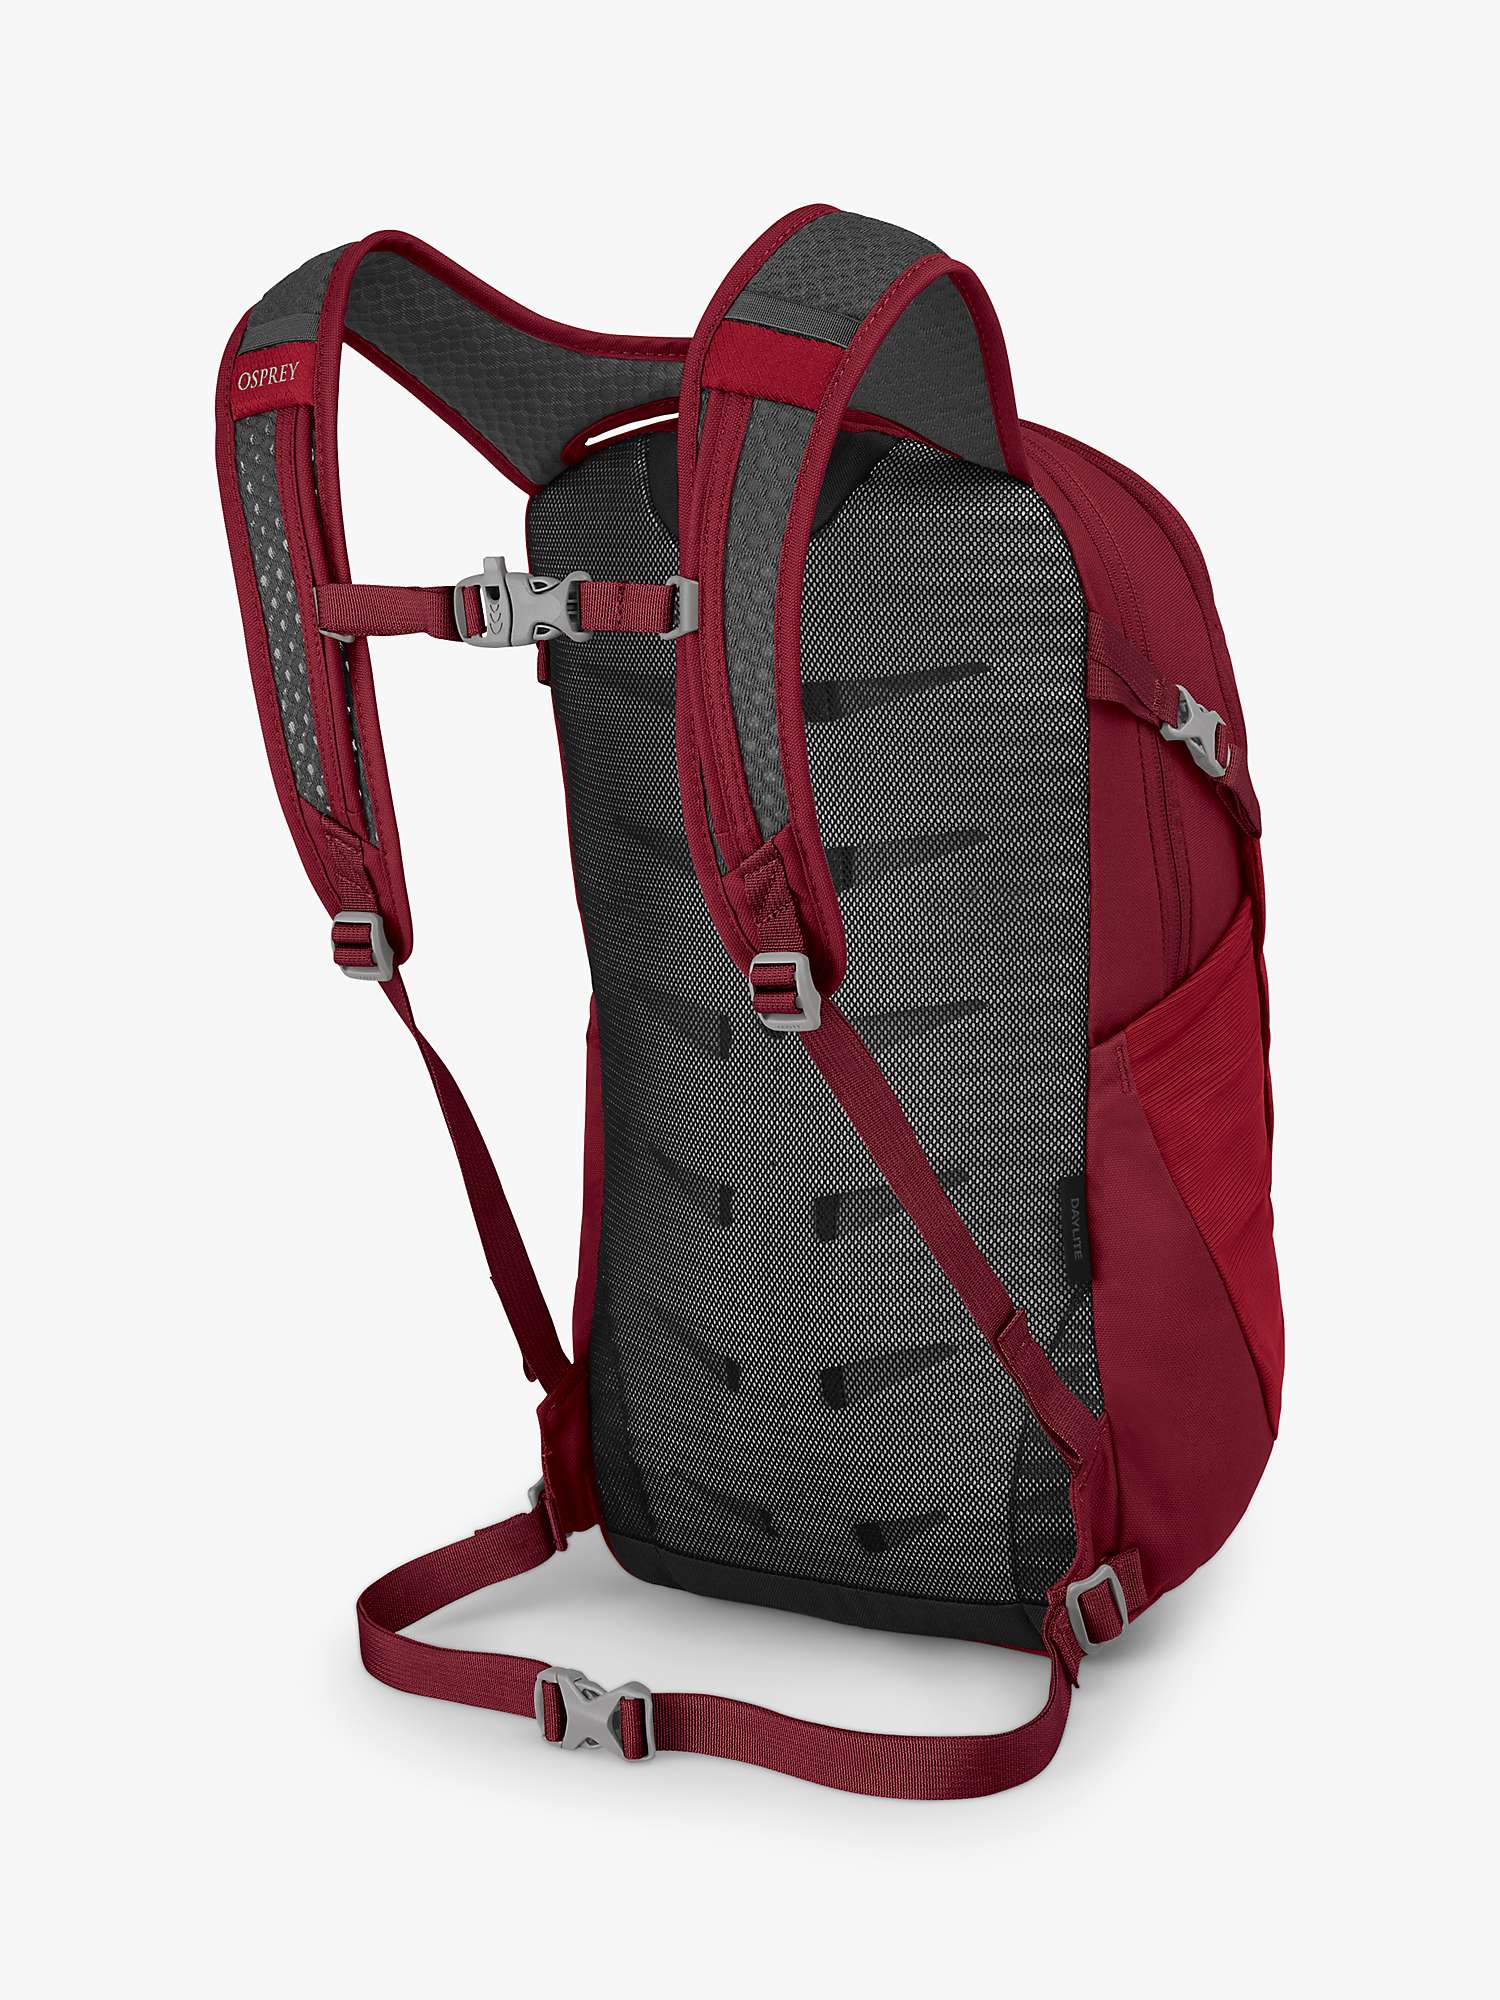 Buy Osprey Daylite Day Backpack Online at johnlewis.com